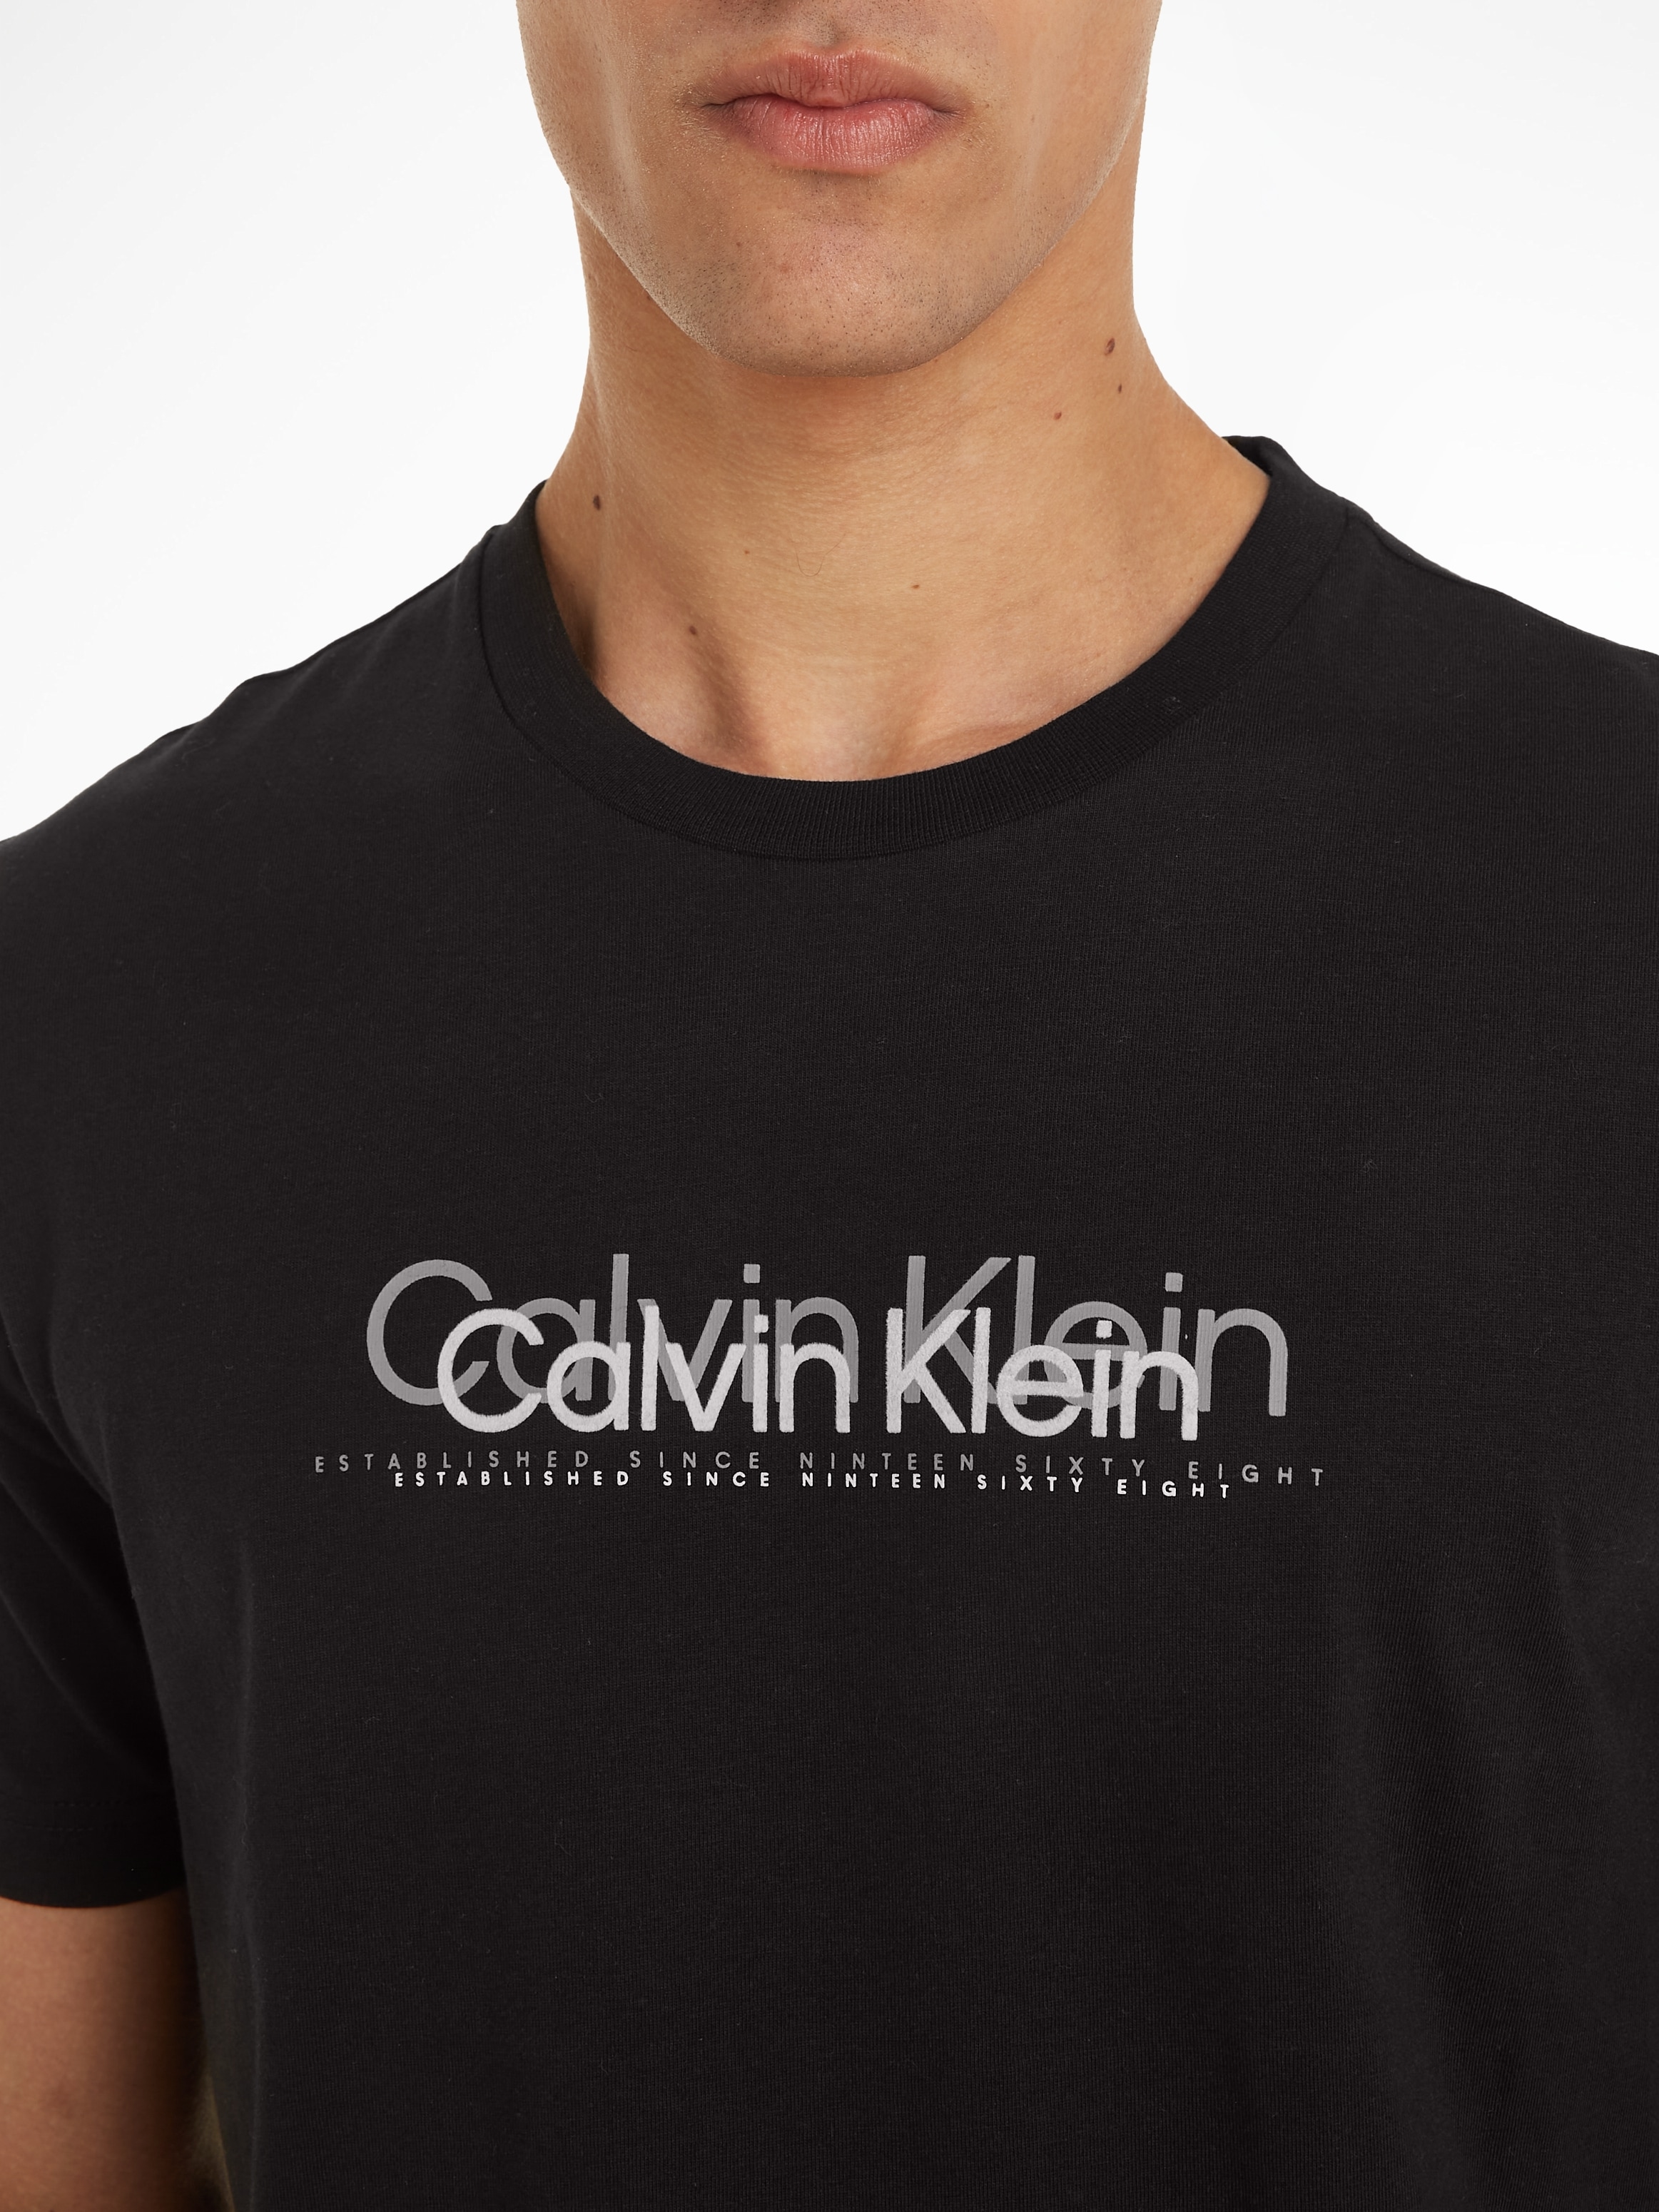 T-Shirt Calvin kaufen T-SHIRT«, online LOGO Markenlabel FLOCK Klein »DOUBLE mit